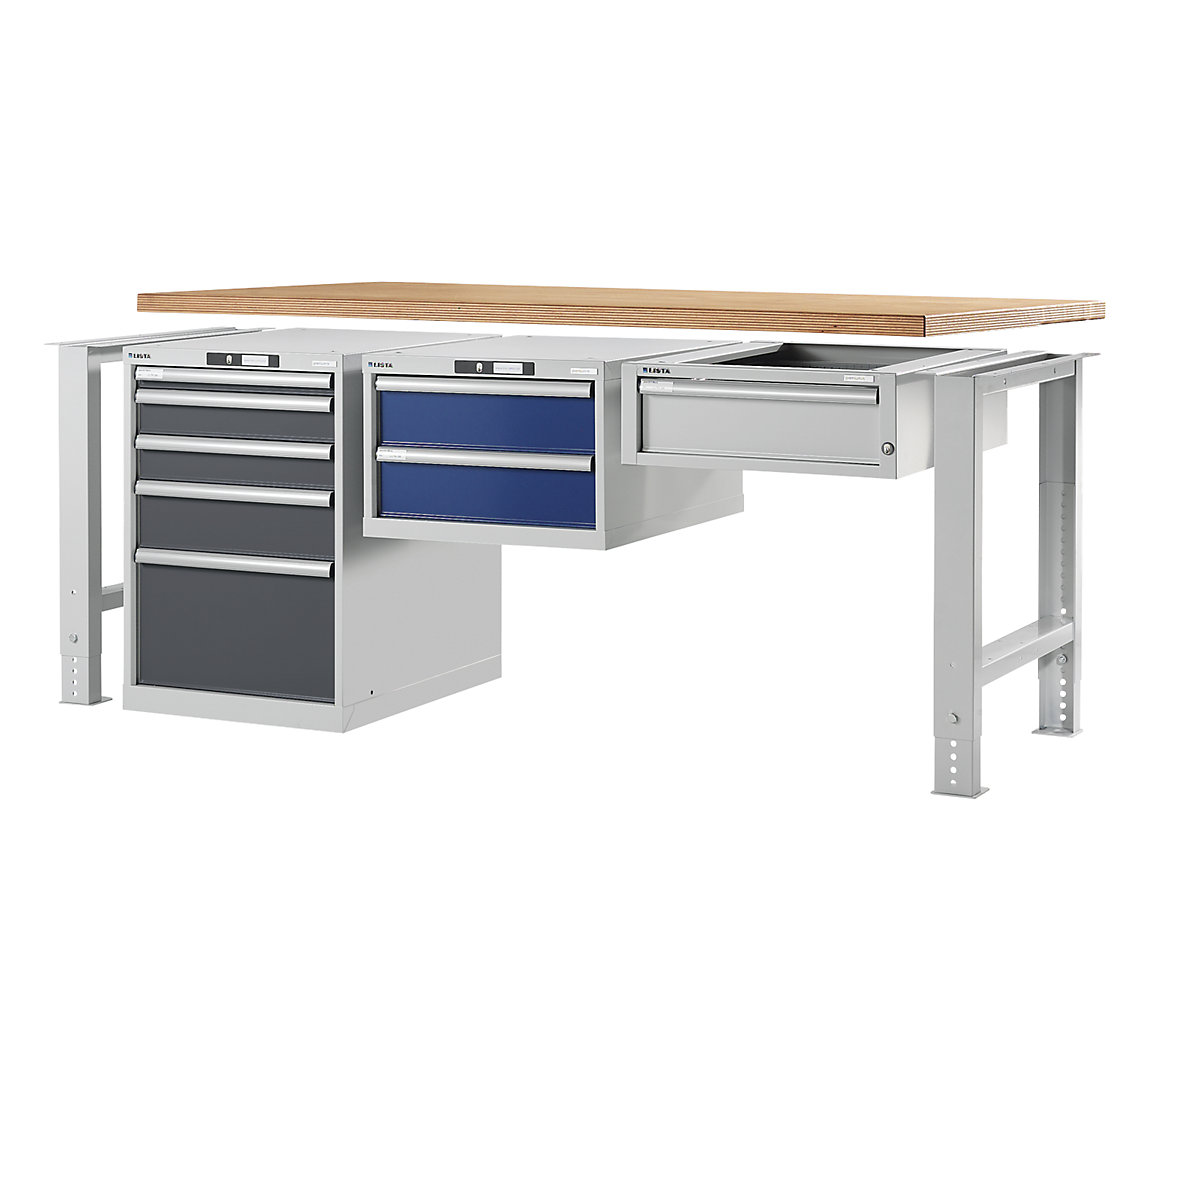 Stół warsztatowy w systemie modułowym, szafka dolna – LISTA (Zdjęcie produktu 10)-9